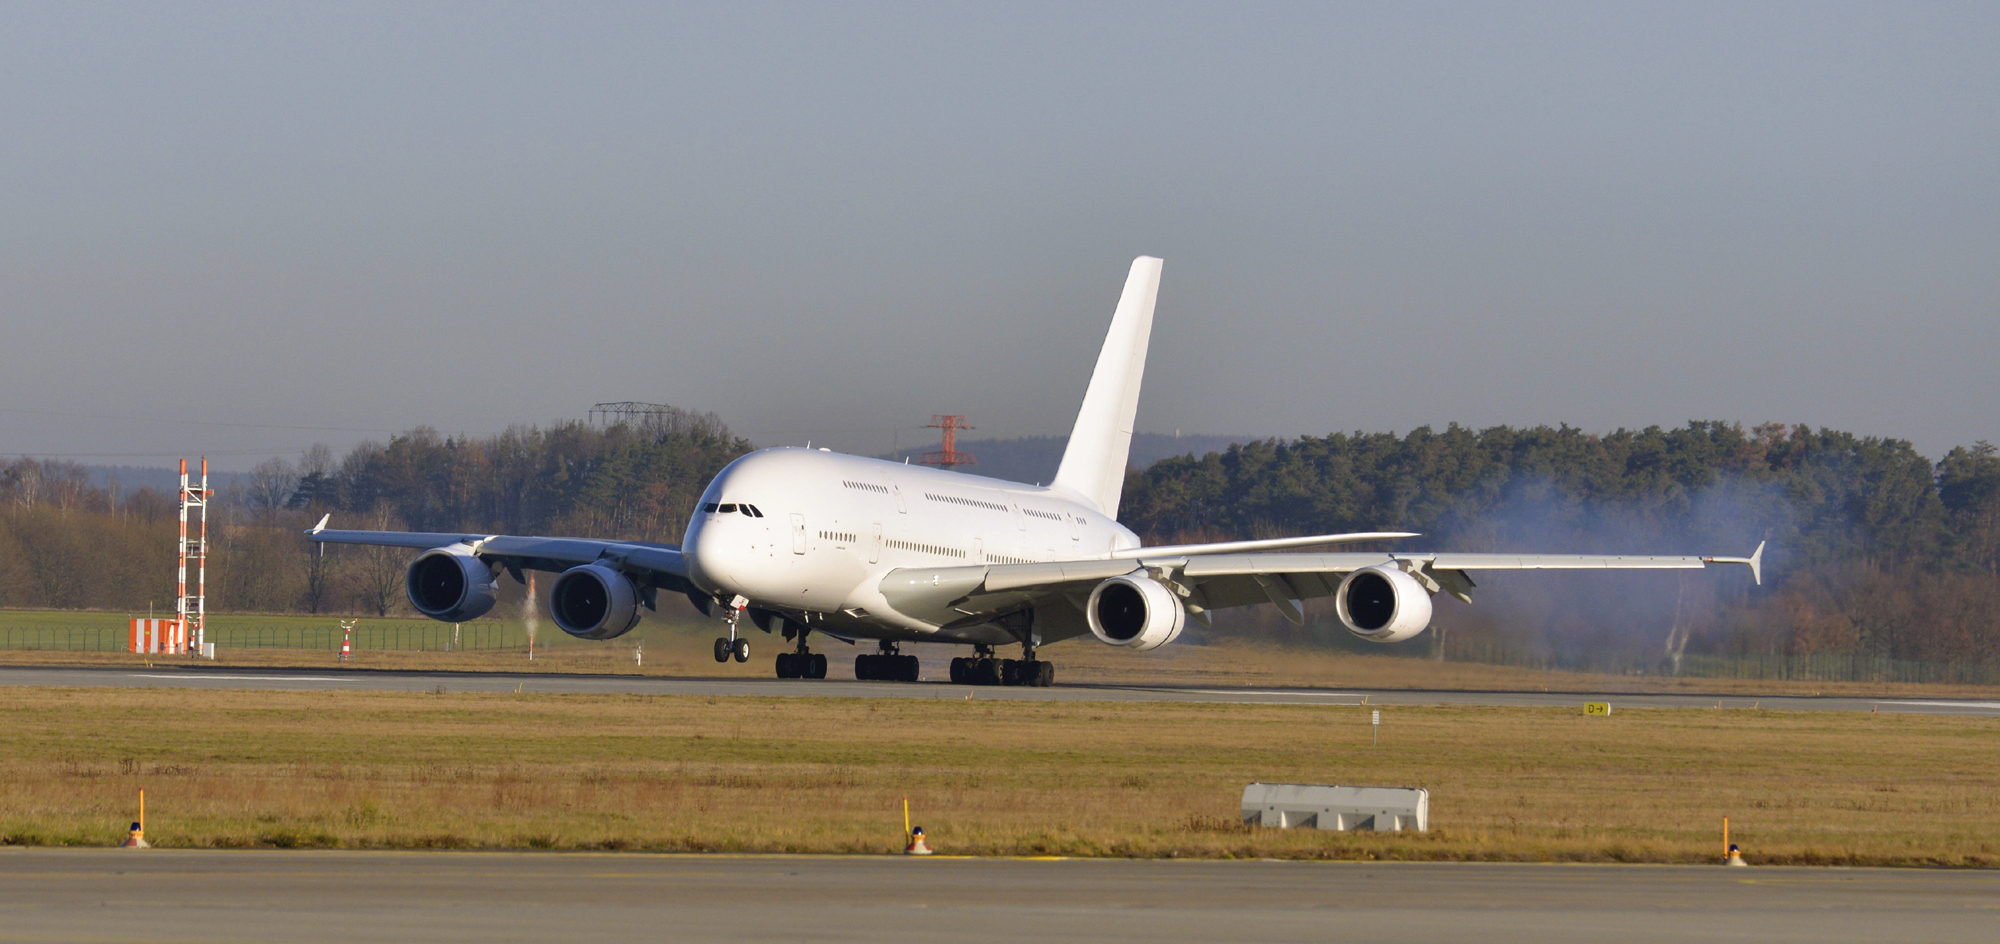 F-HPJB A380